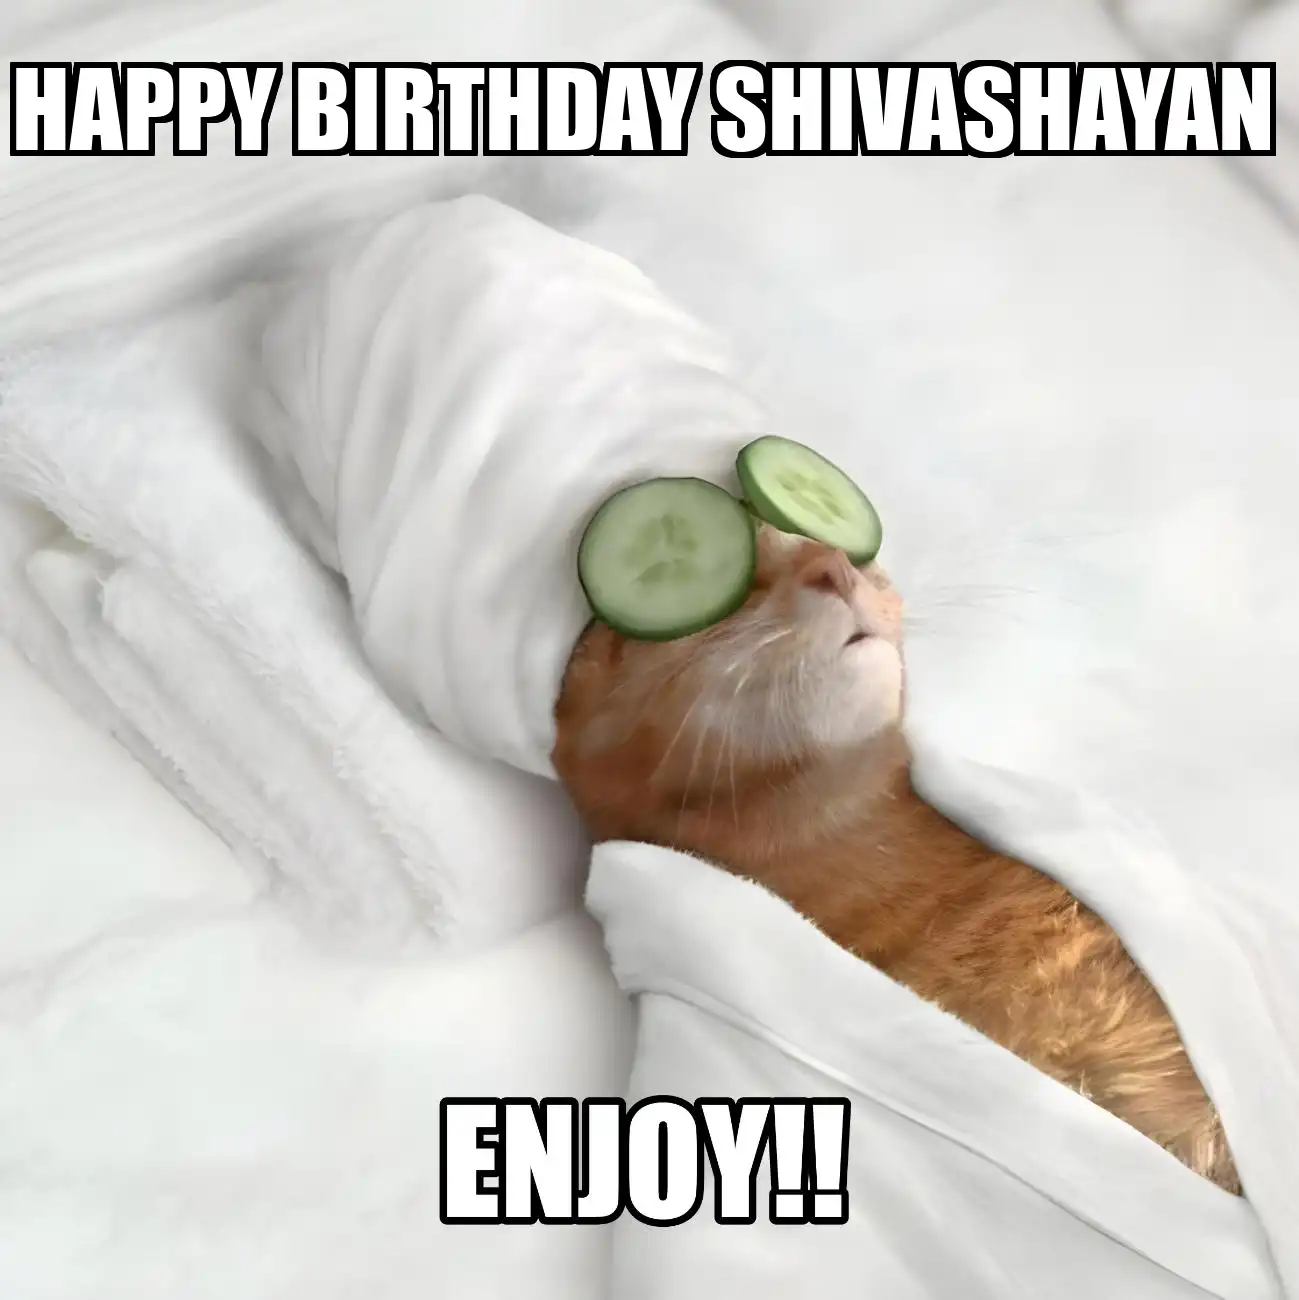 Happy Birthday Shivashayan Enjoy Cat Meme